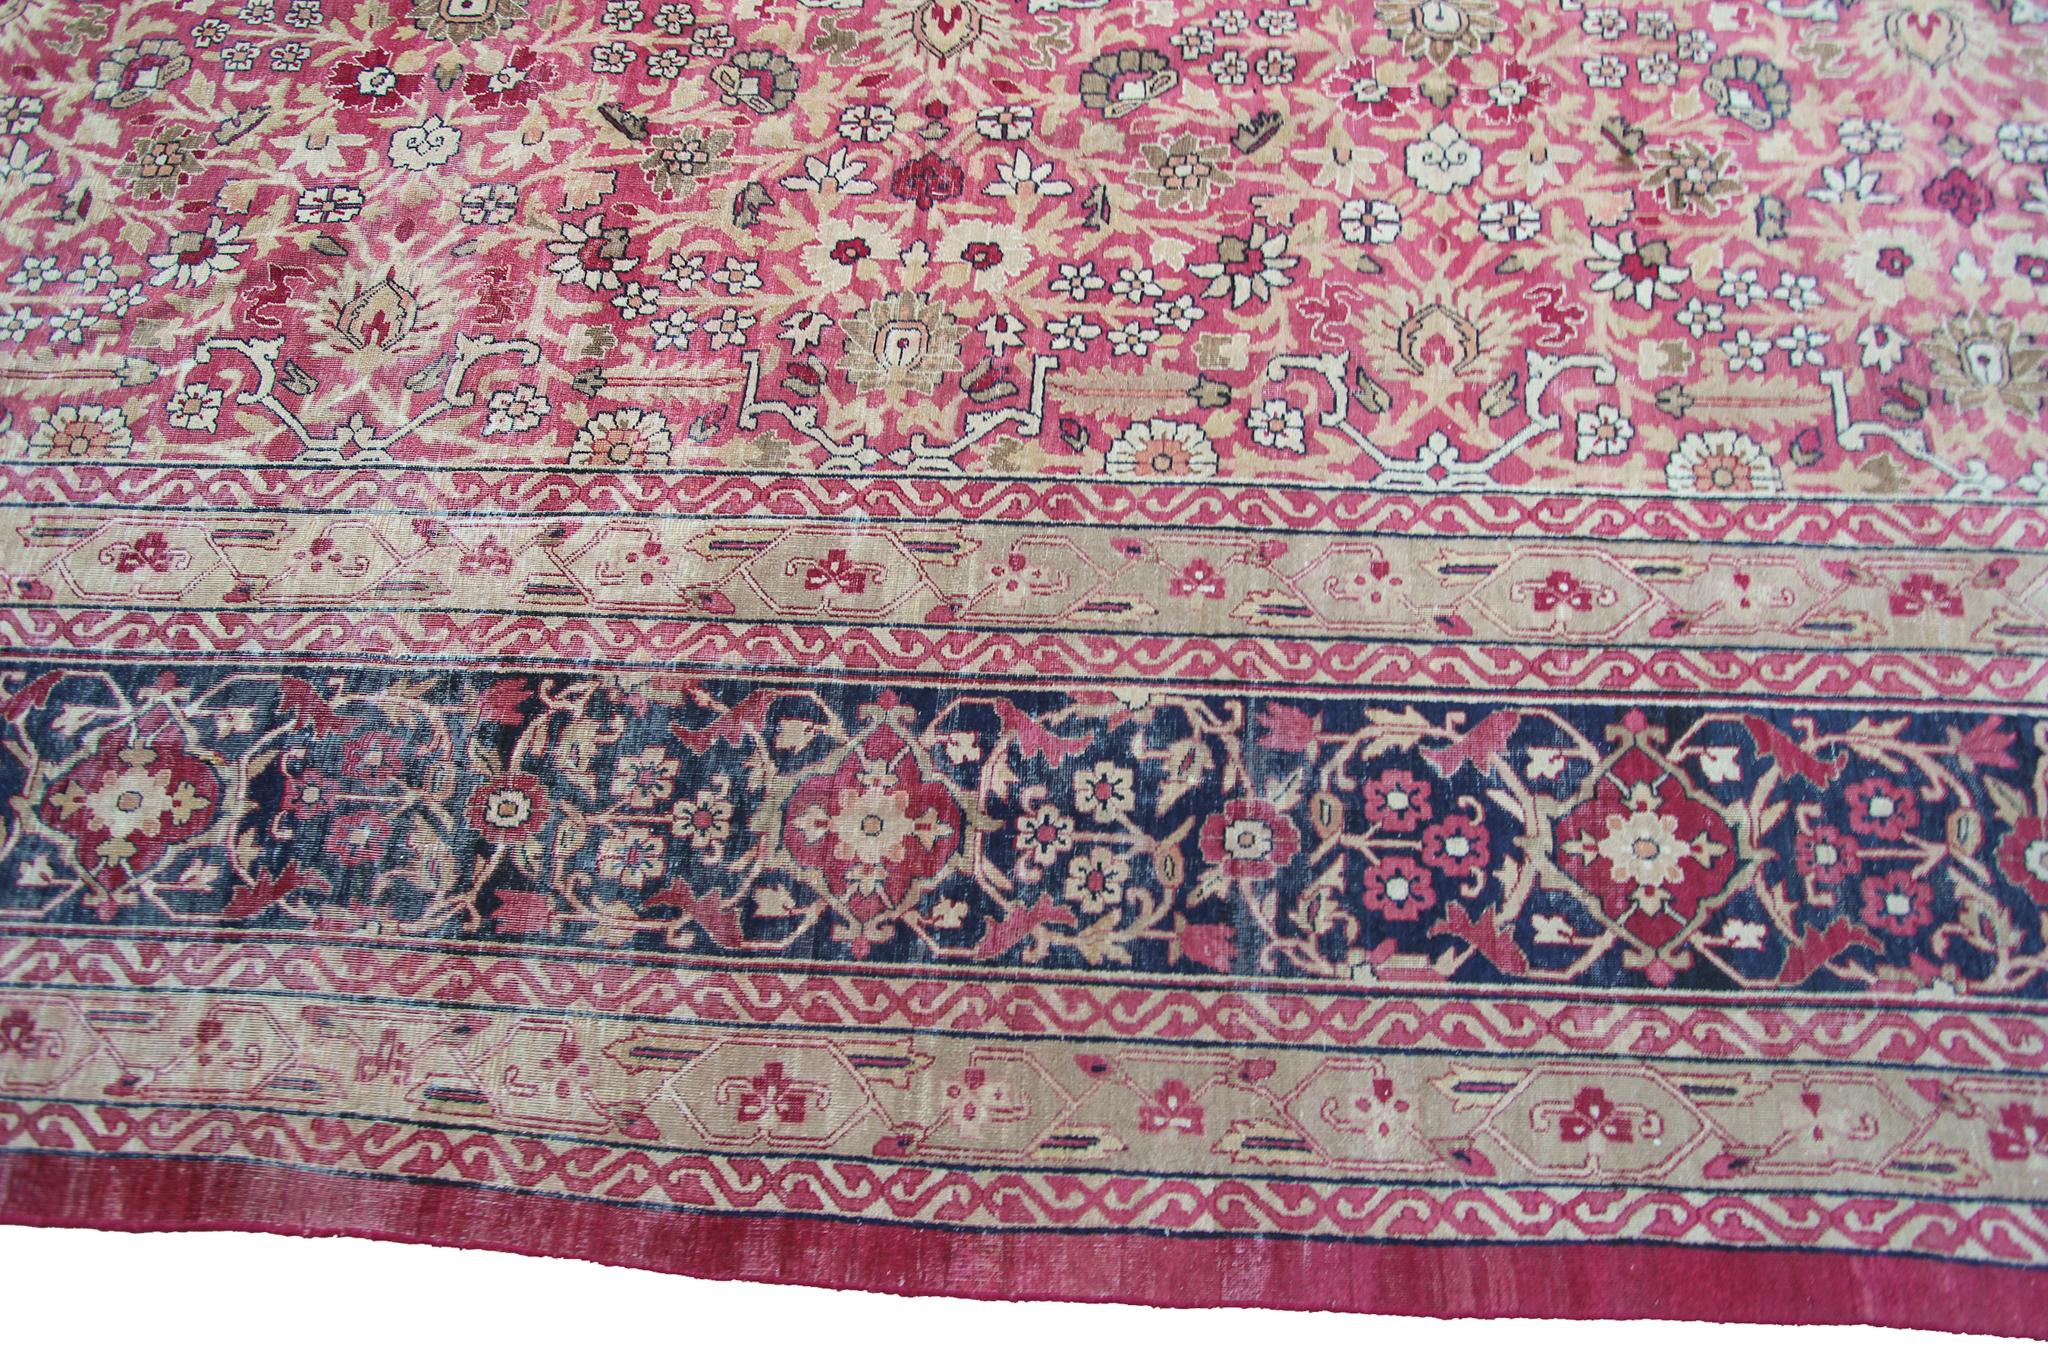 c1870 Pink Antique Lavar Kermanshah Fine Geometric Rug 11x17ft 138cm x 519cm For Sale 6